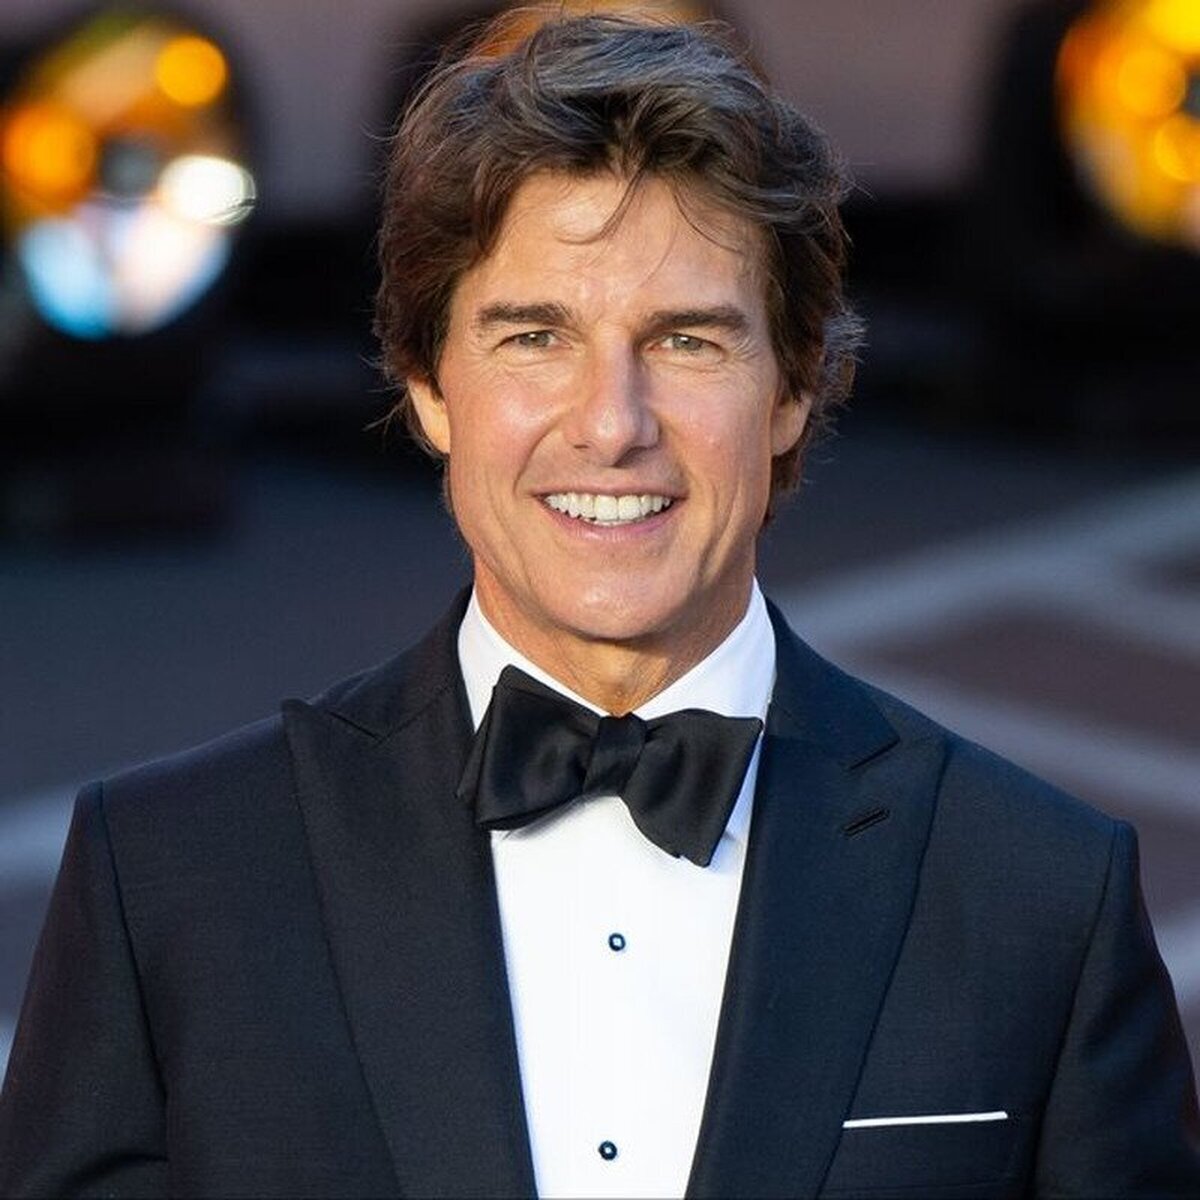 ¿Qué actor / actriz te cabrea qué aún no haya ganado un Oscar? comienzo yo.Tom Cruise